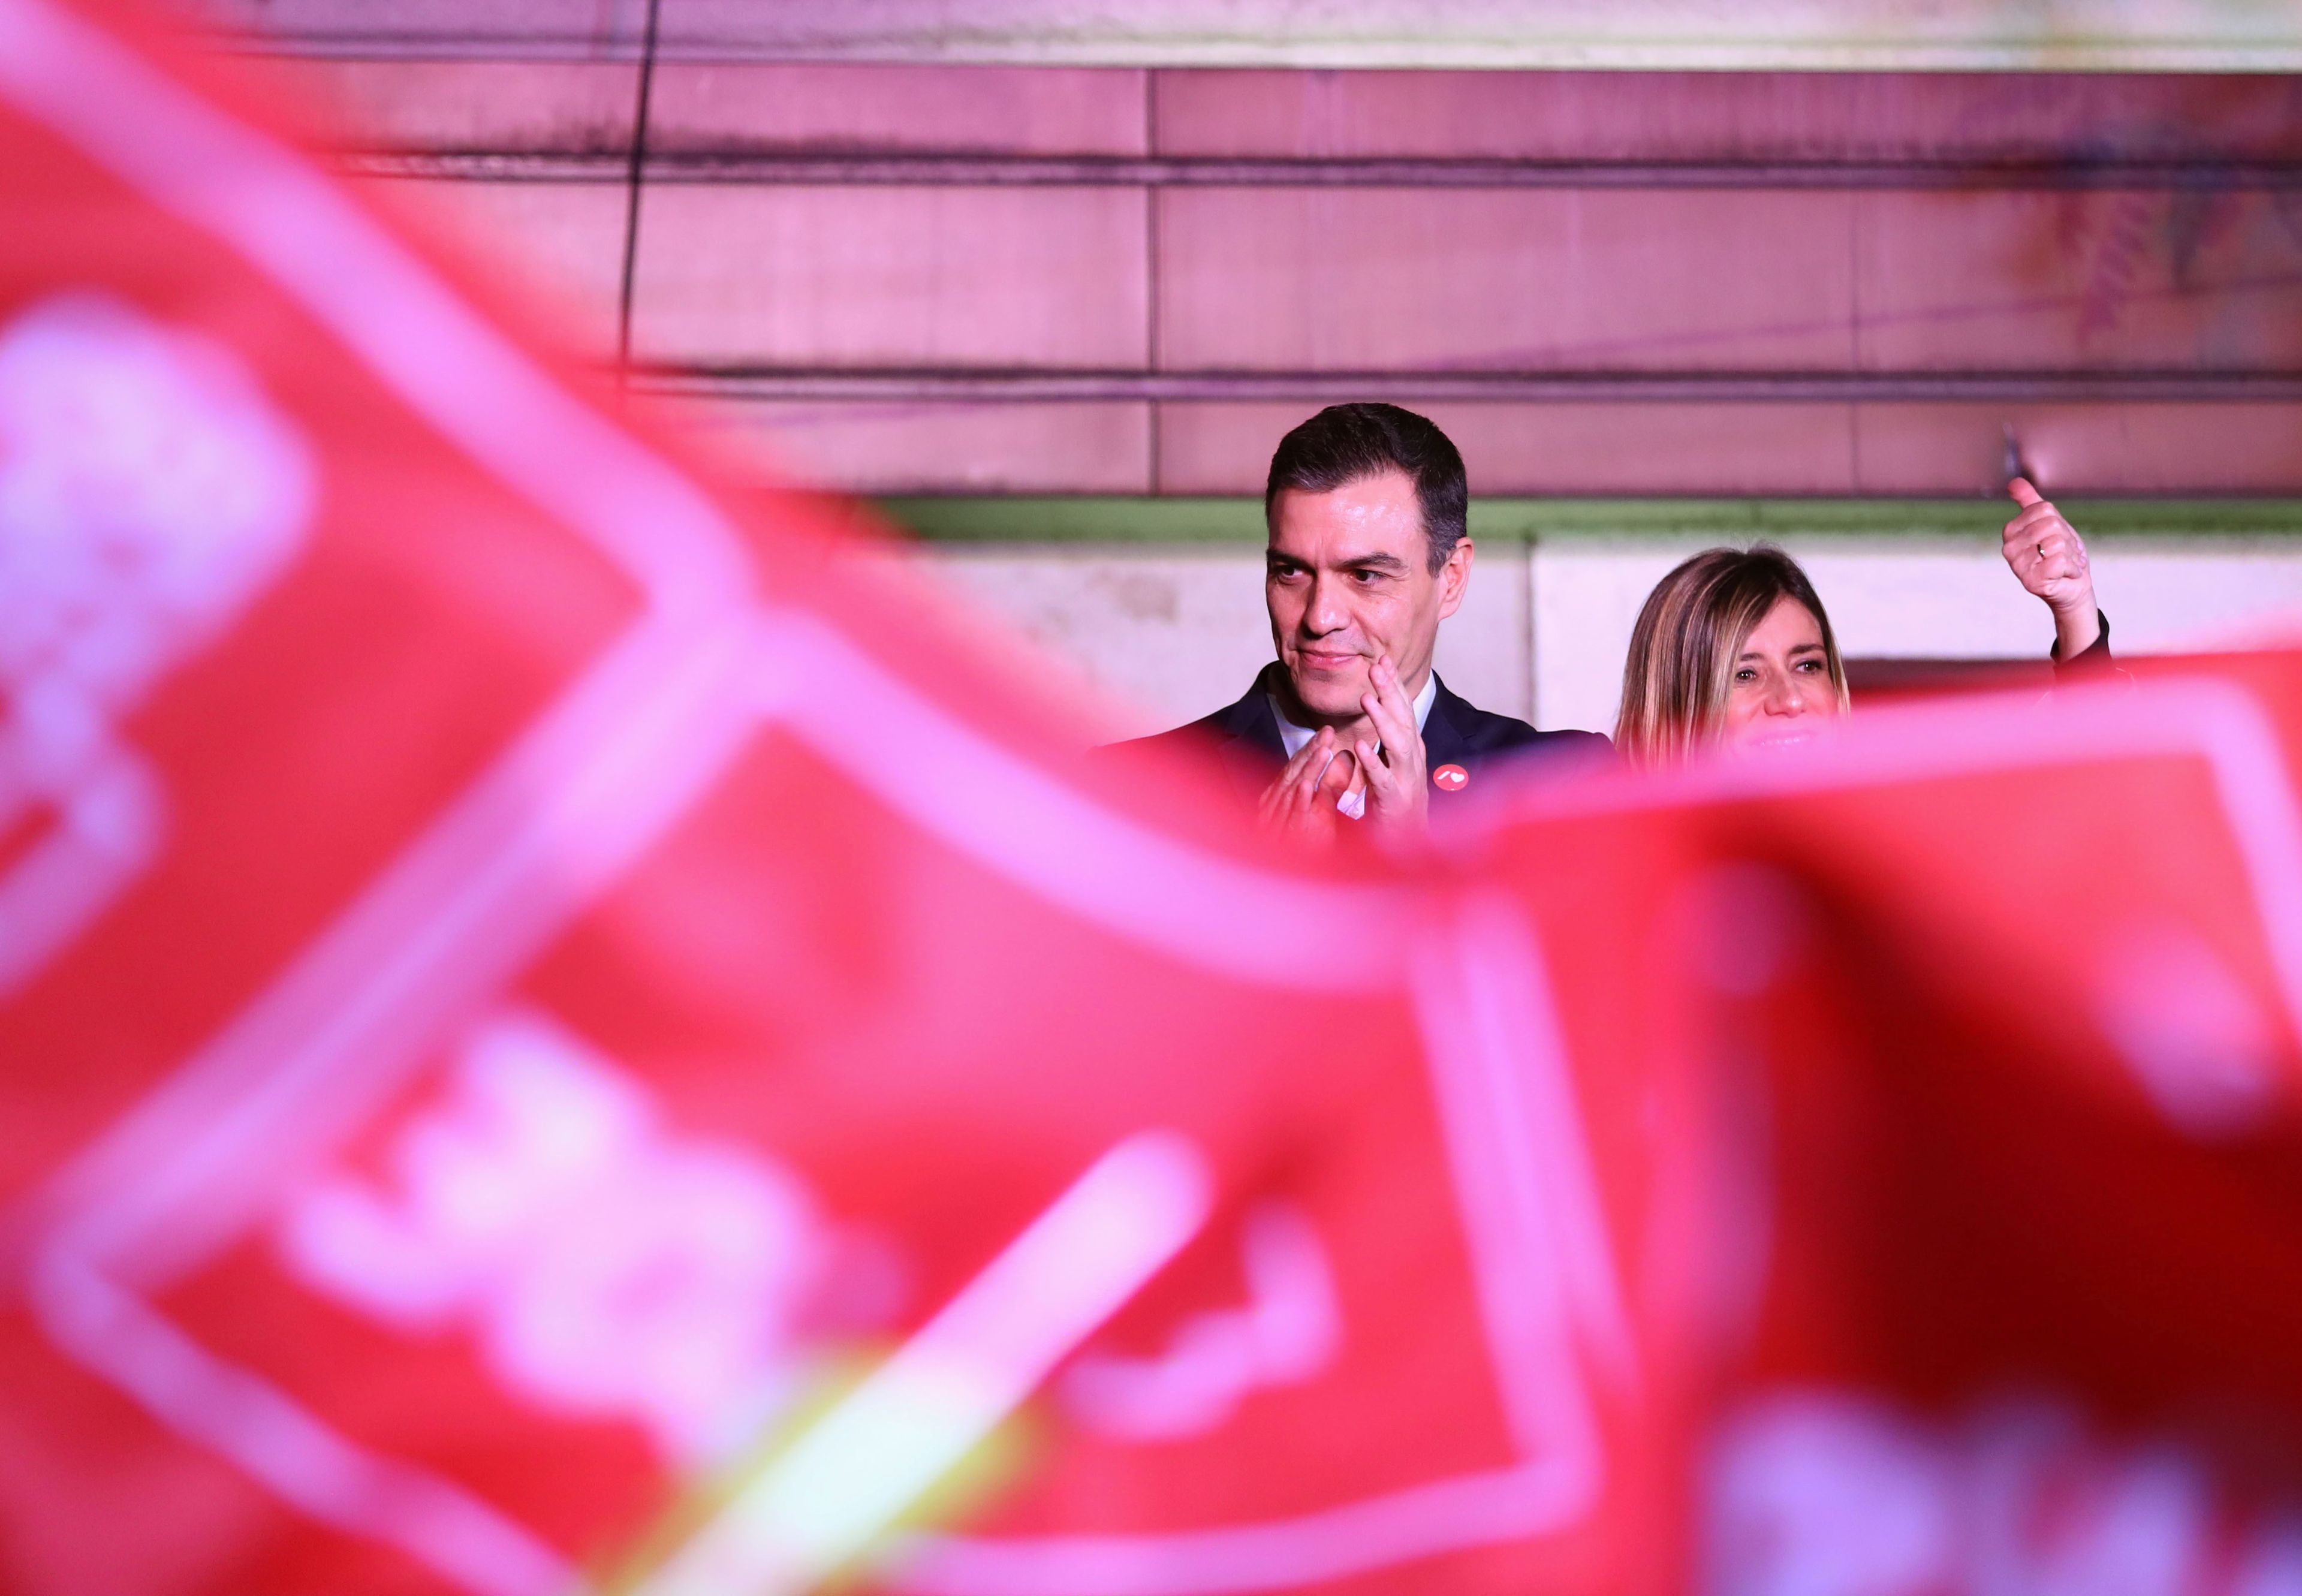 Pedro Sánchez, presidente del Gobierno en funciones y líder del PSOE, celebra el triunfo tras las elecciones generales de noviembre de 2019.